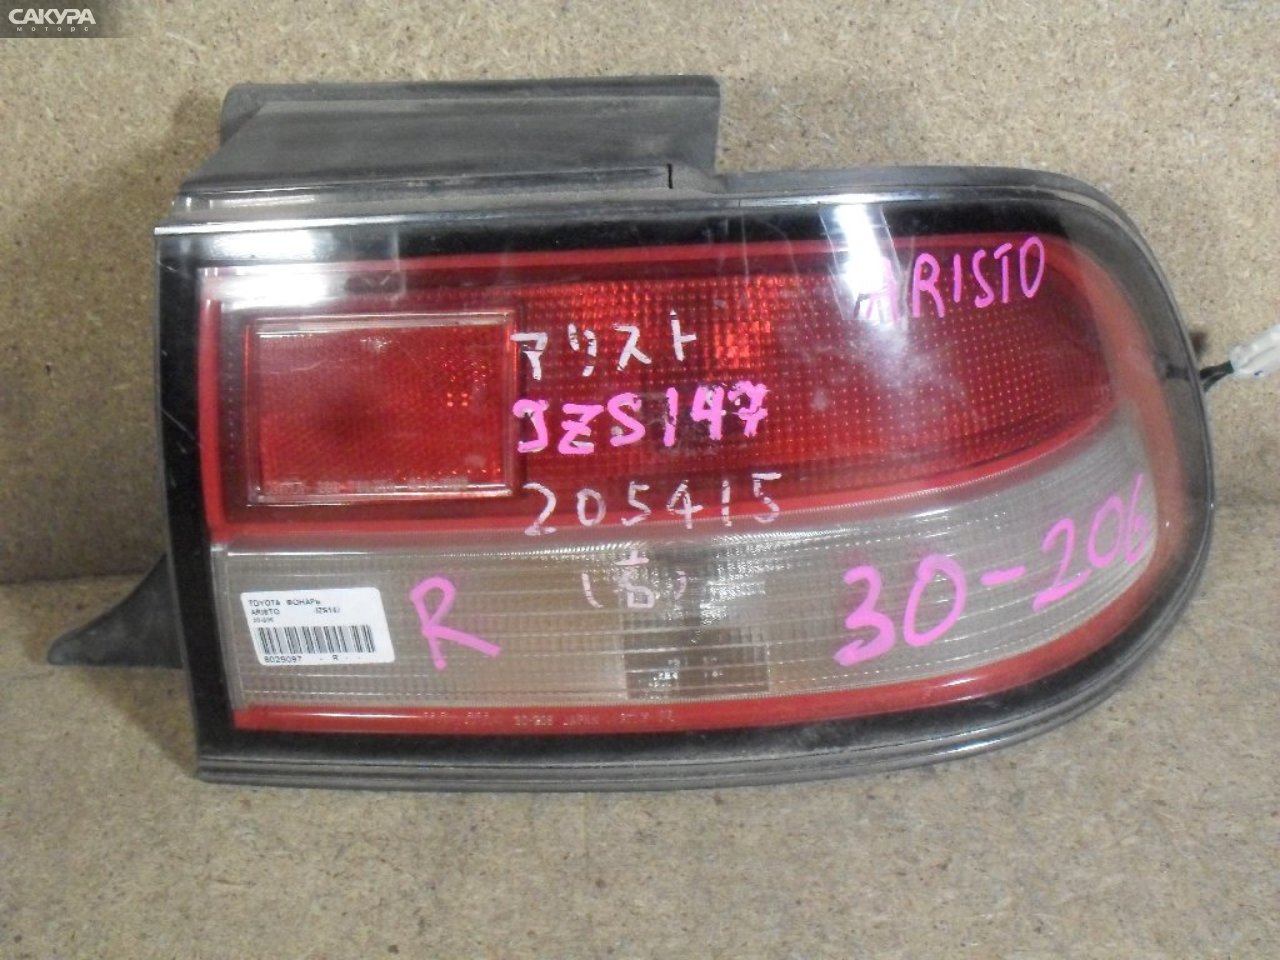 Фонарь стоп-сигнала правый Toyota Aristo JZS147 30-206: купить в Сакура Абакан.